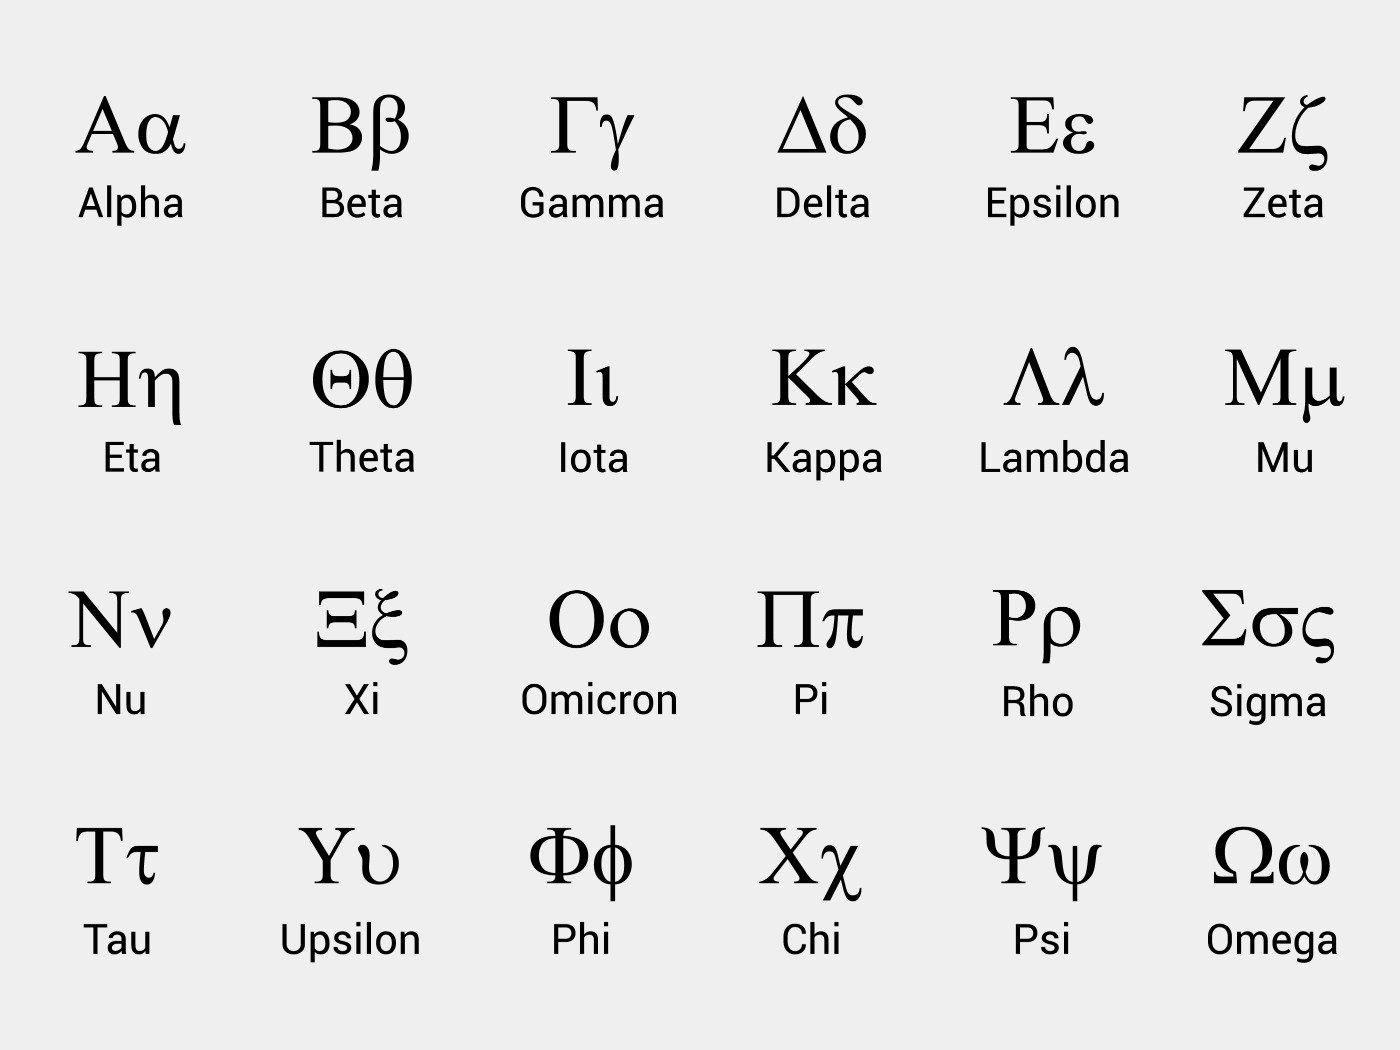 Alfabeto da Alphabet: veja o que cada letra significa na nova Google.